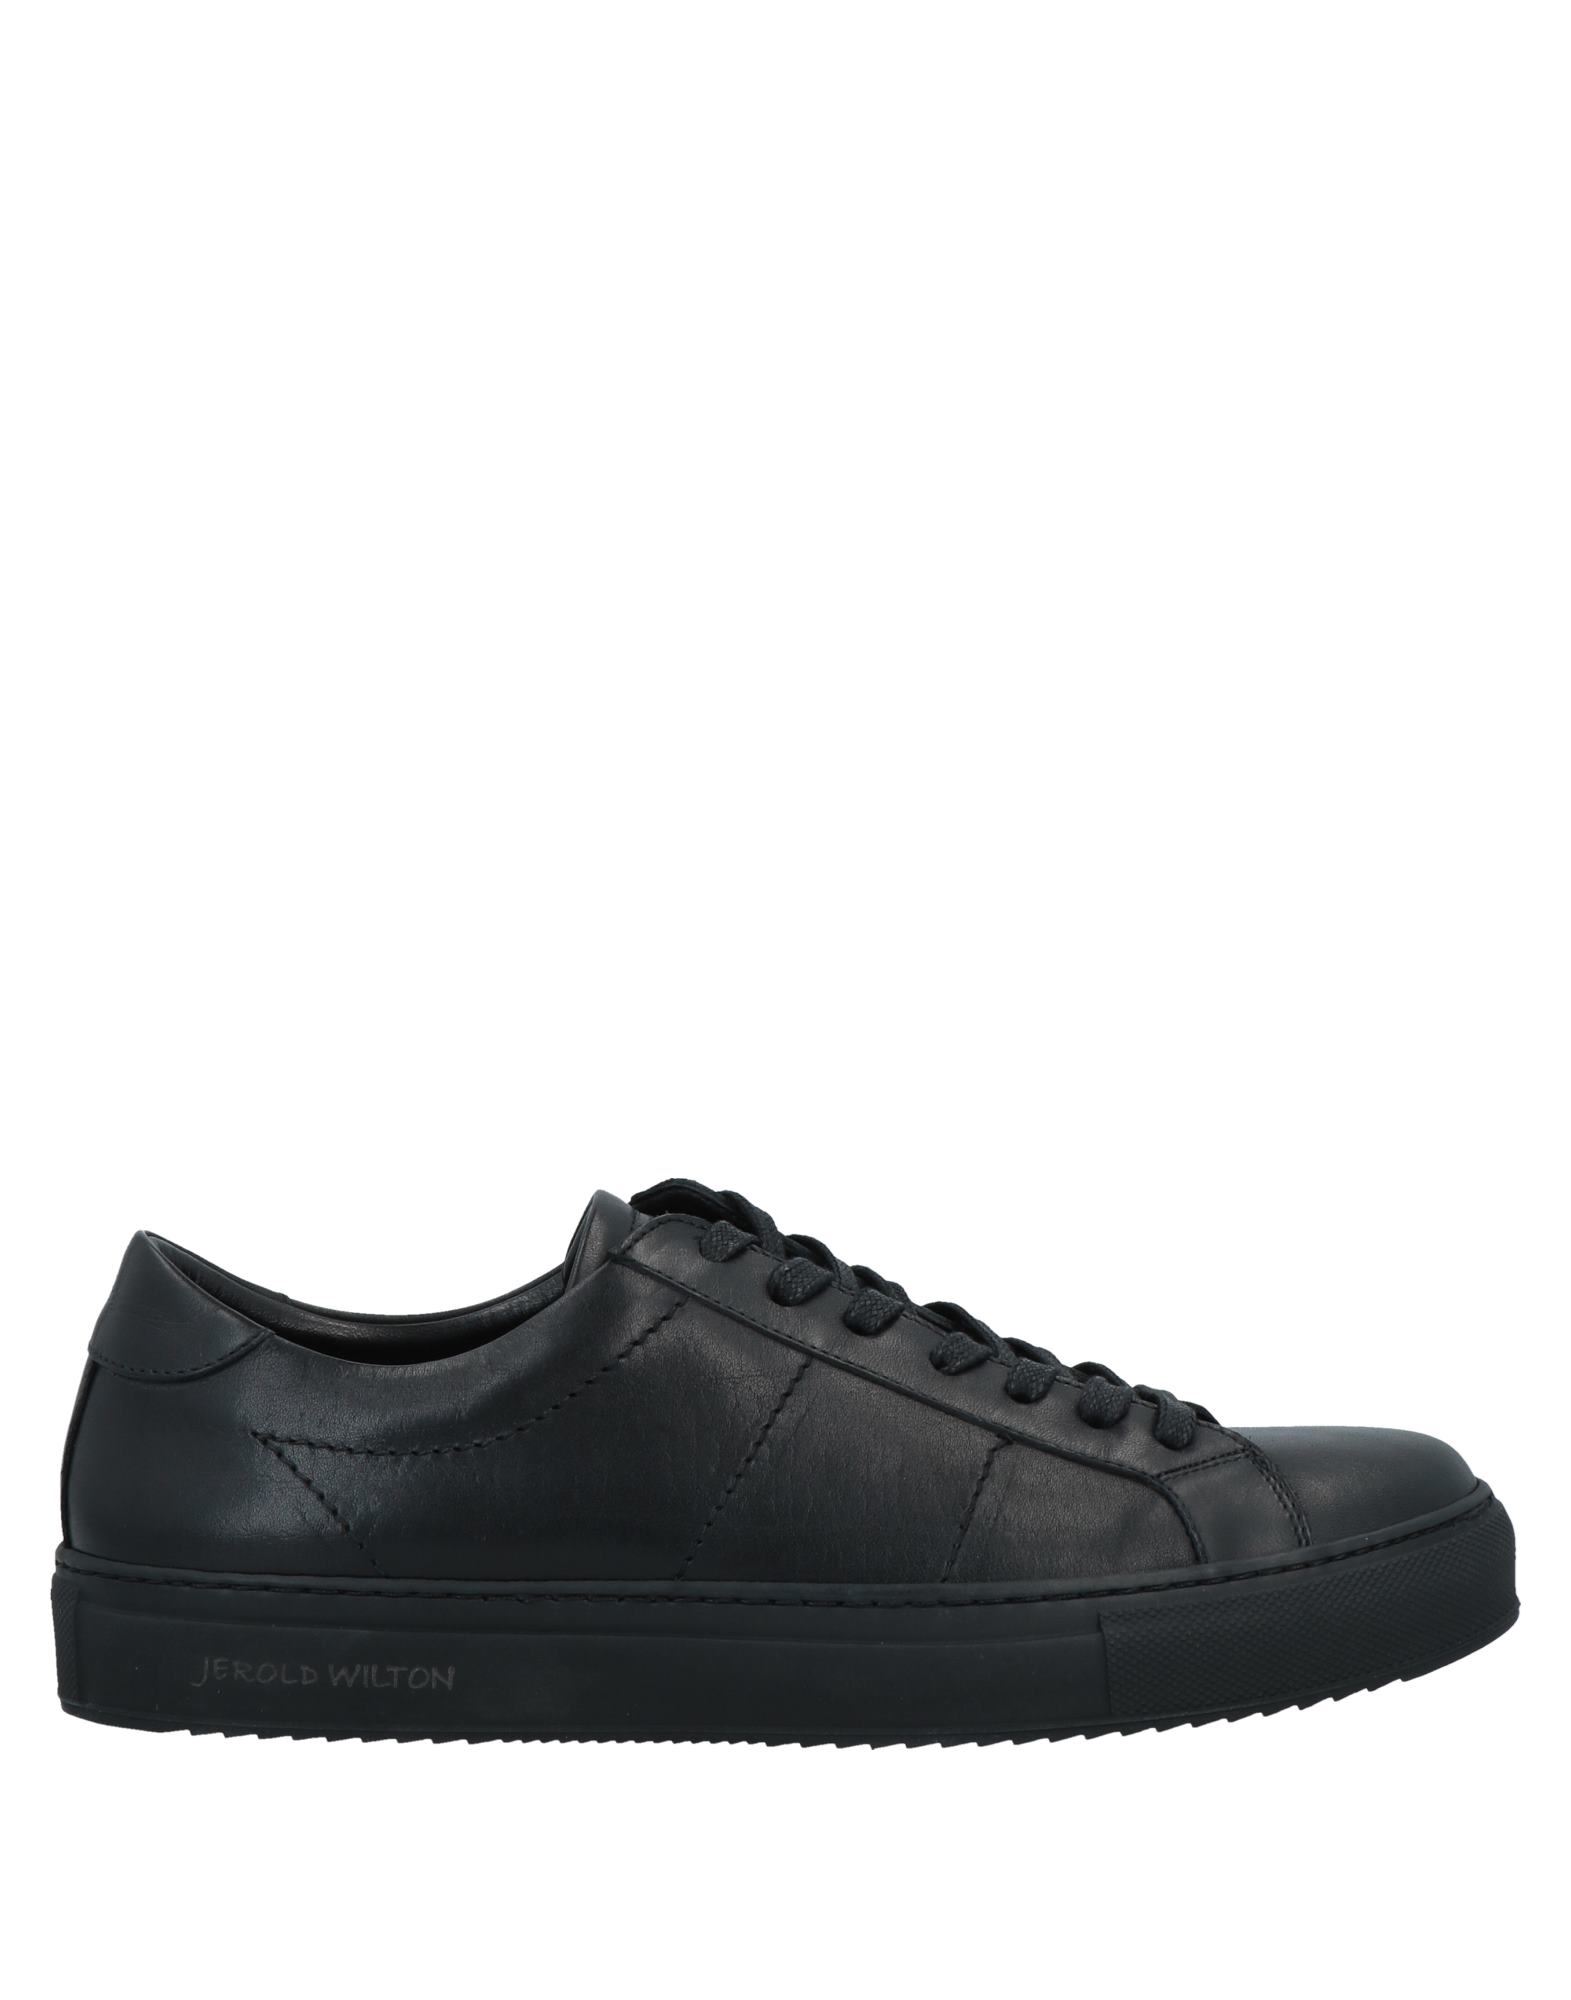 Jerold Wilton Sneakers In Black